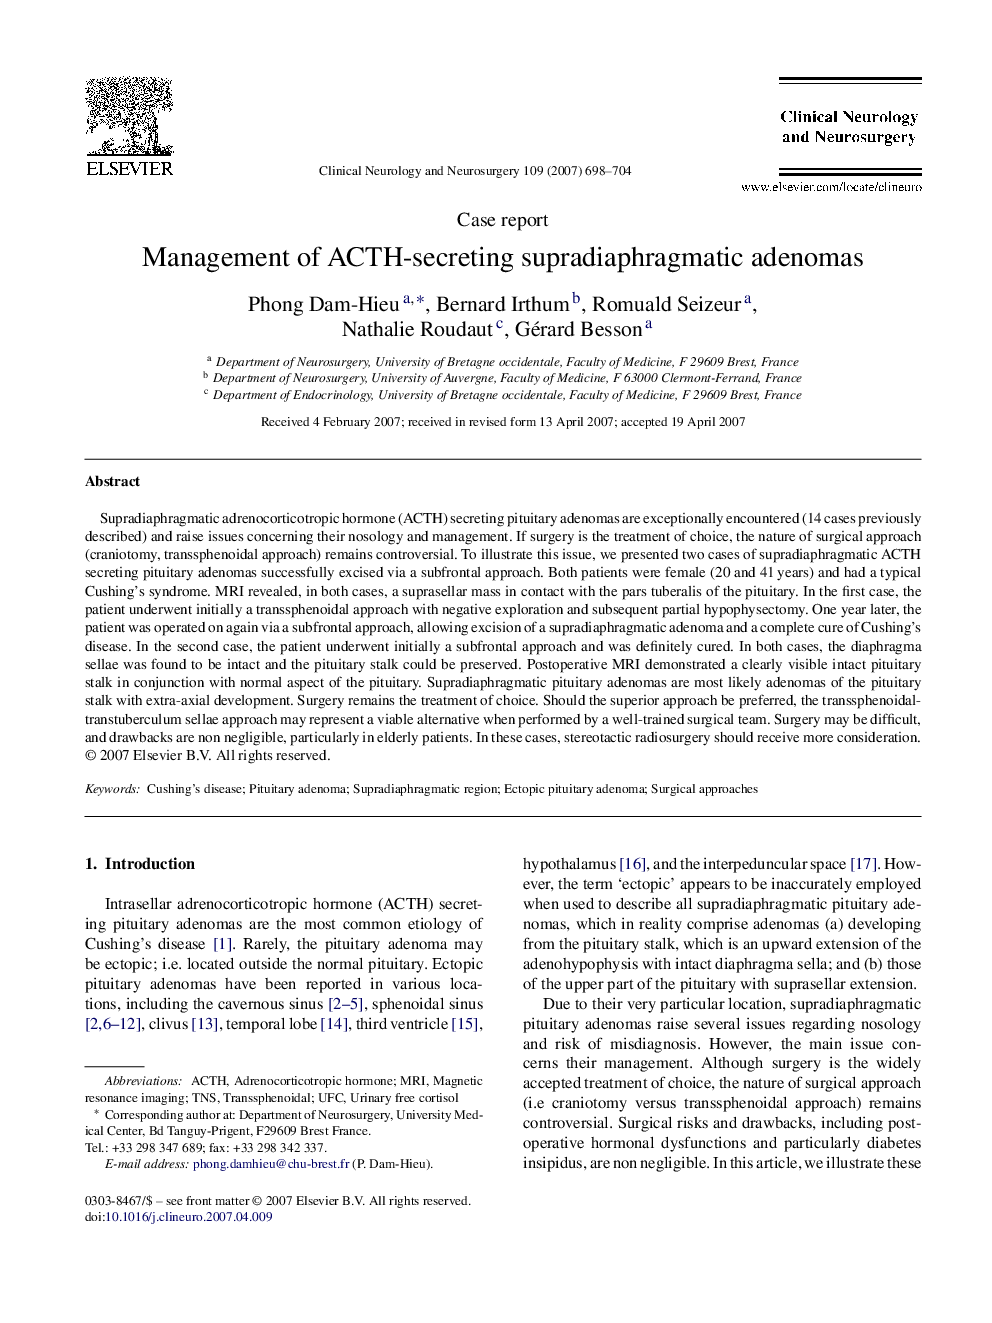 Management of ACTH-secreting supradiaphragmatic adenomas